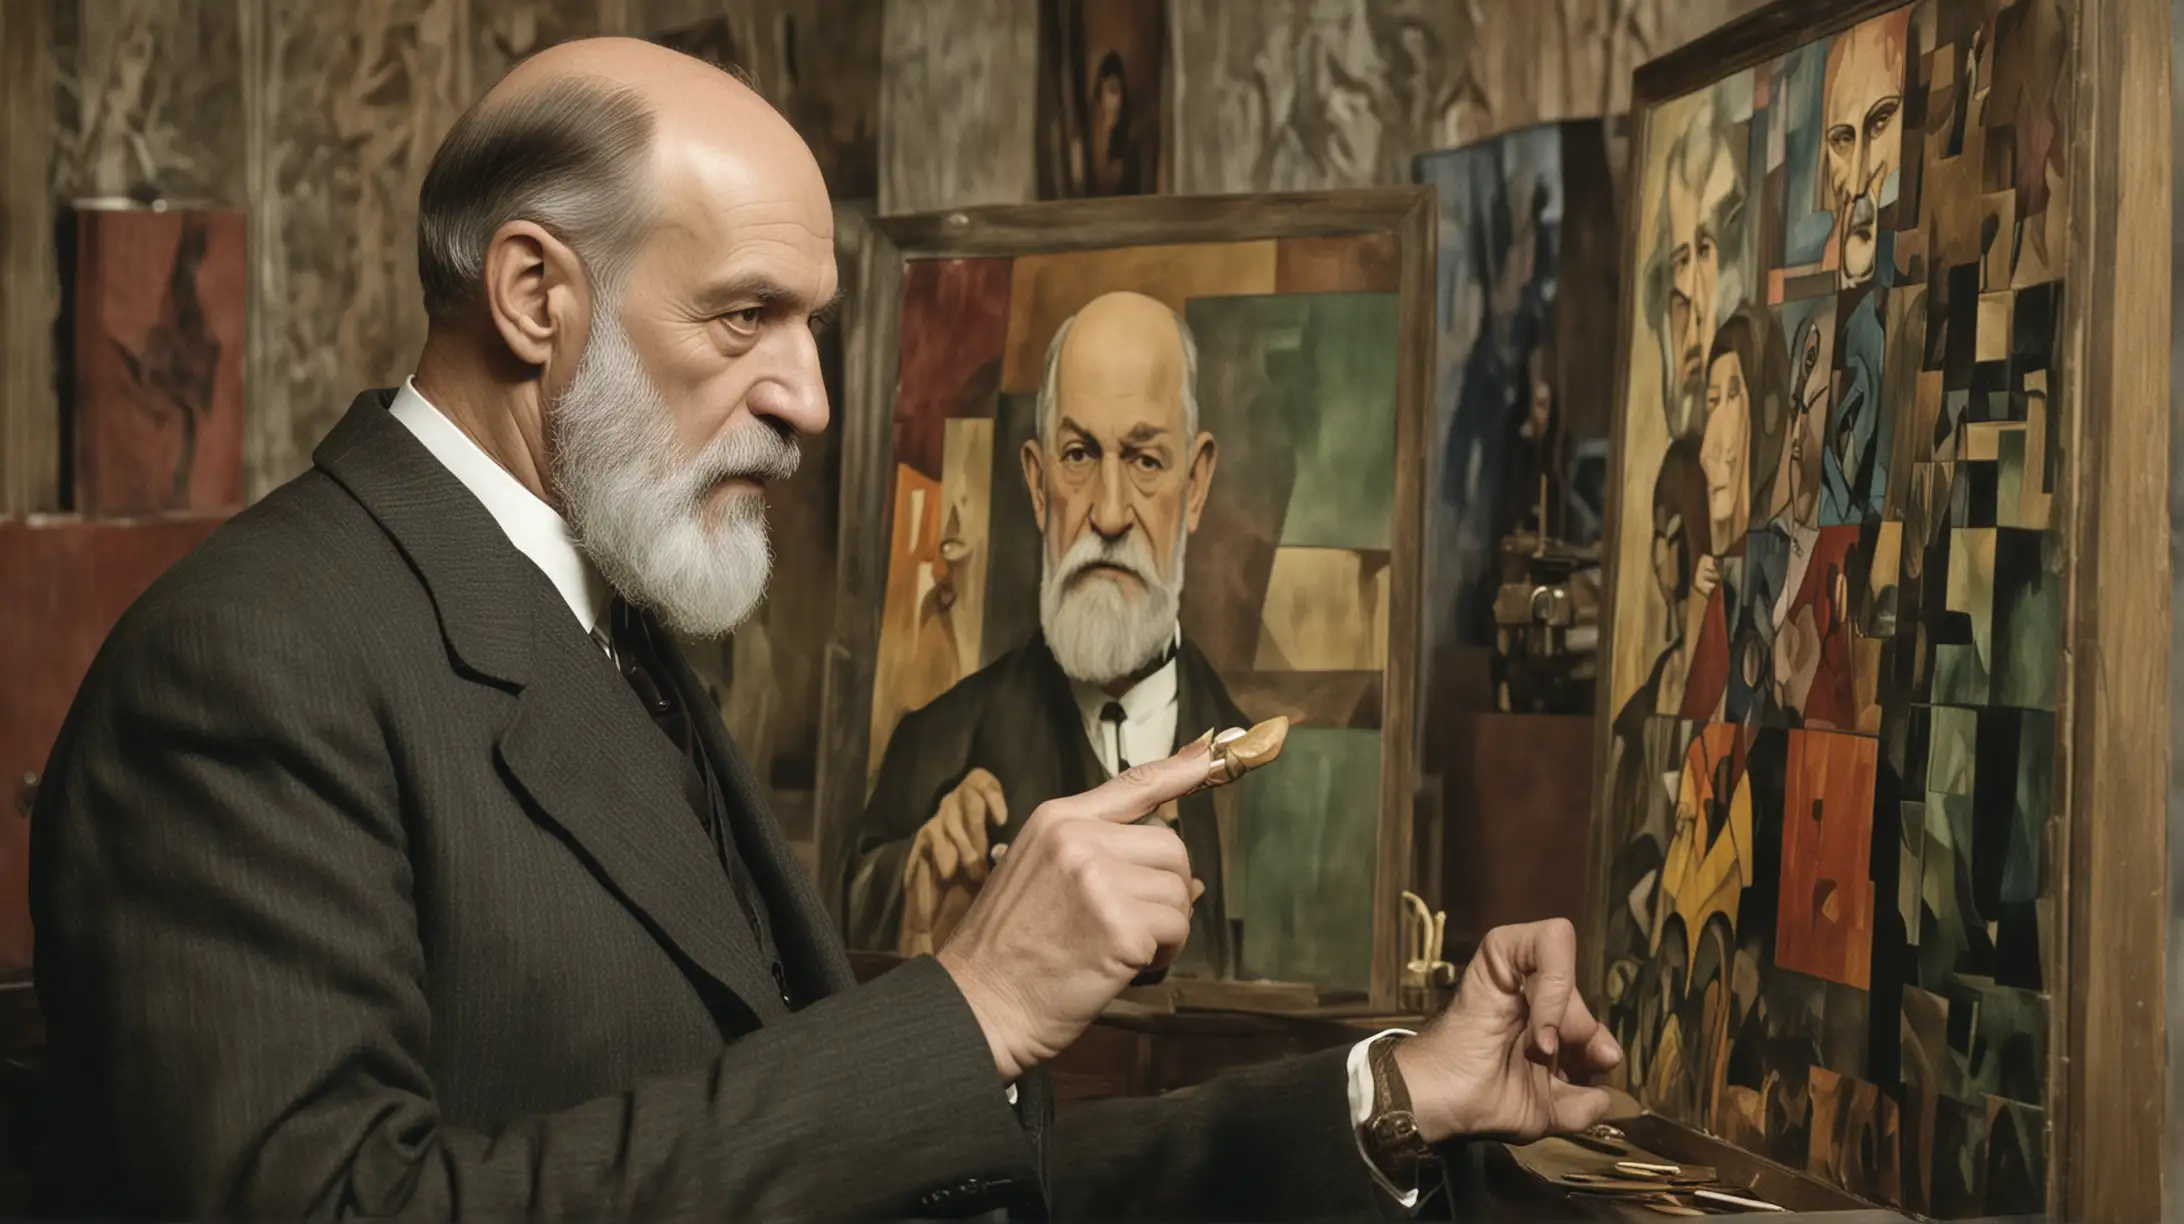 Sigmund Freud Contemplates Cubist Art in 1917